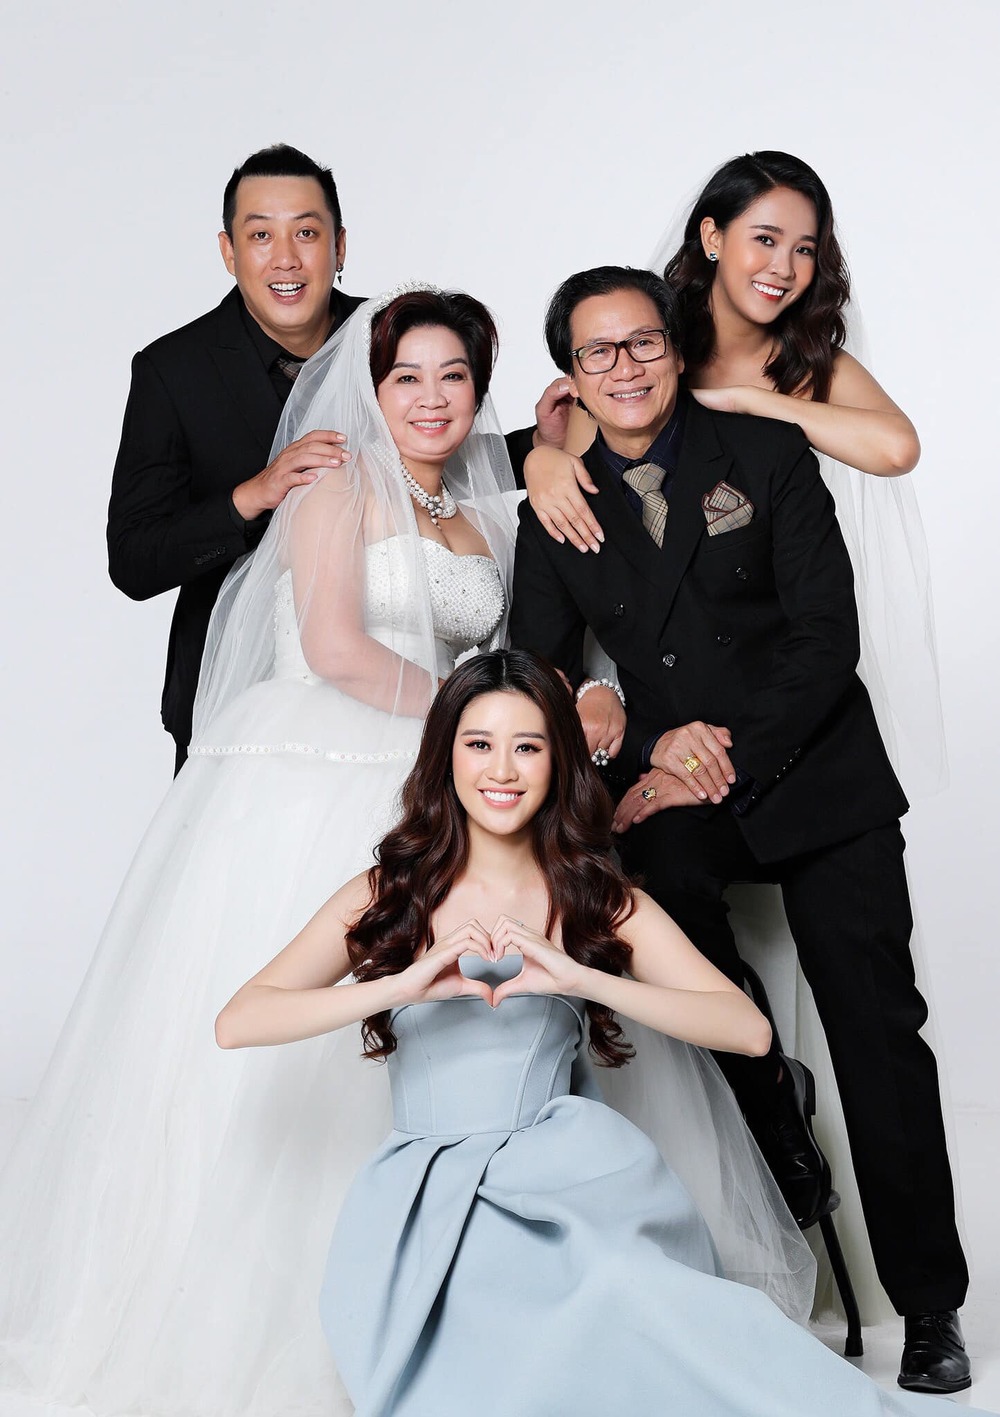 Hoa hậu Khánh Vân tung bộ ảnh gia đình, fan hiểu ngay vì sao cô đẹp thế - Ảnh 4